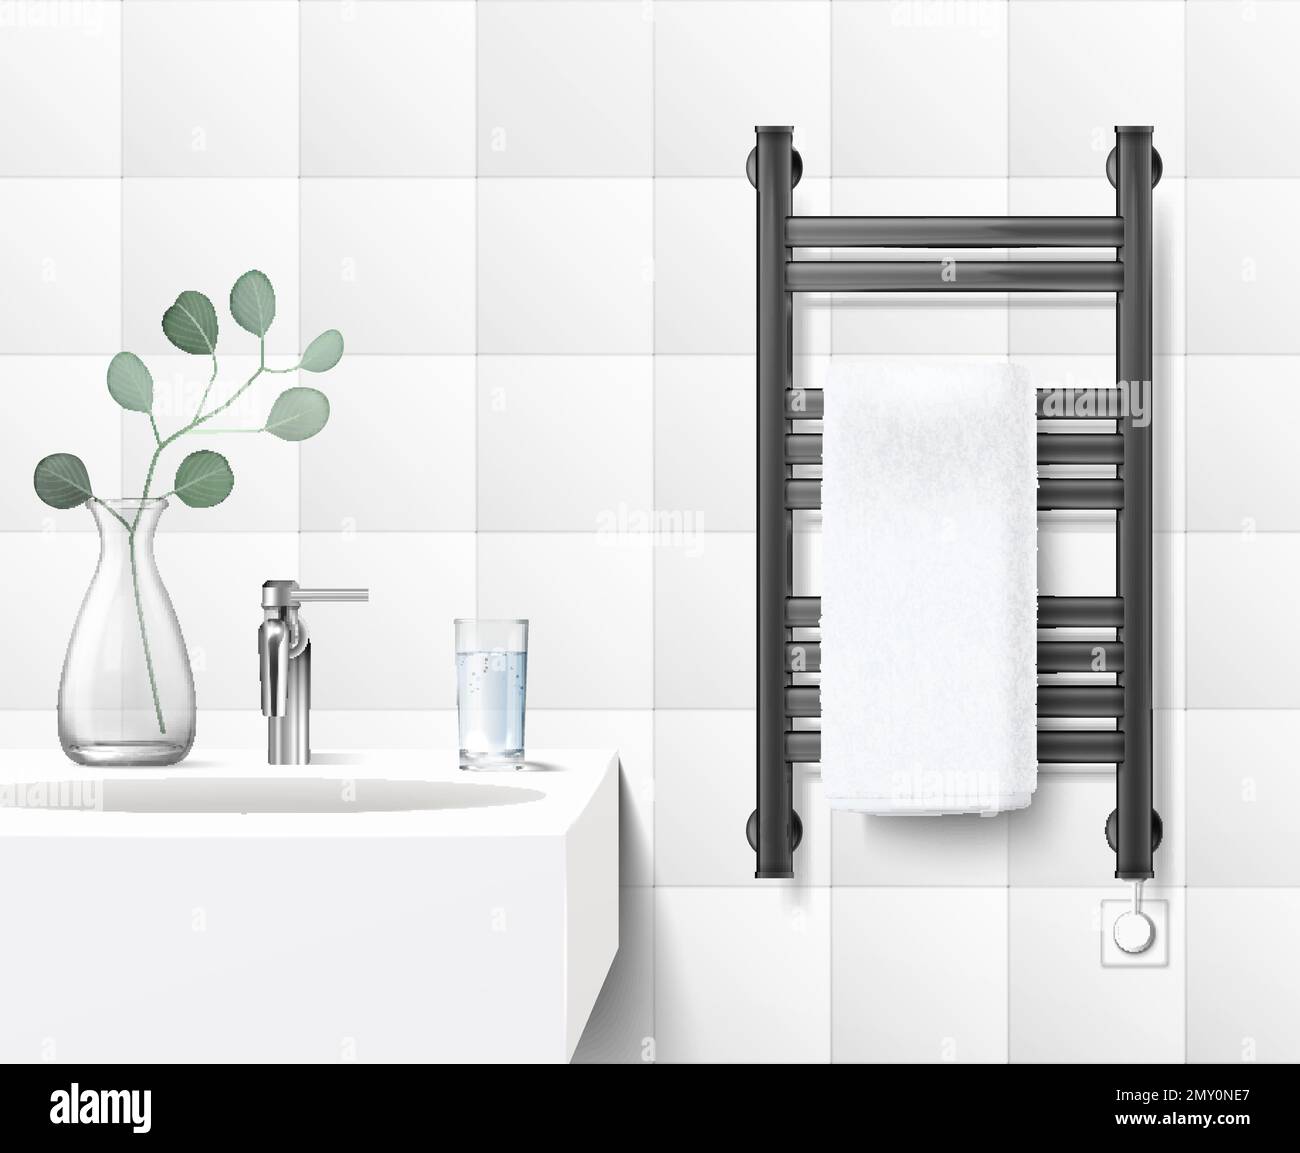 Salle de bains intérieur réaliste avec moderne électrique rail chauffant noir avec serviette blanche à côté de l'évier illustration vectorielle Illustration de Vecteur